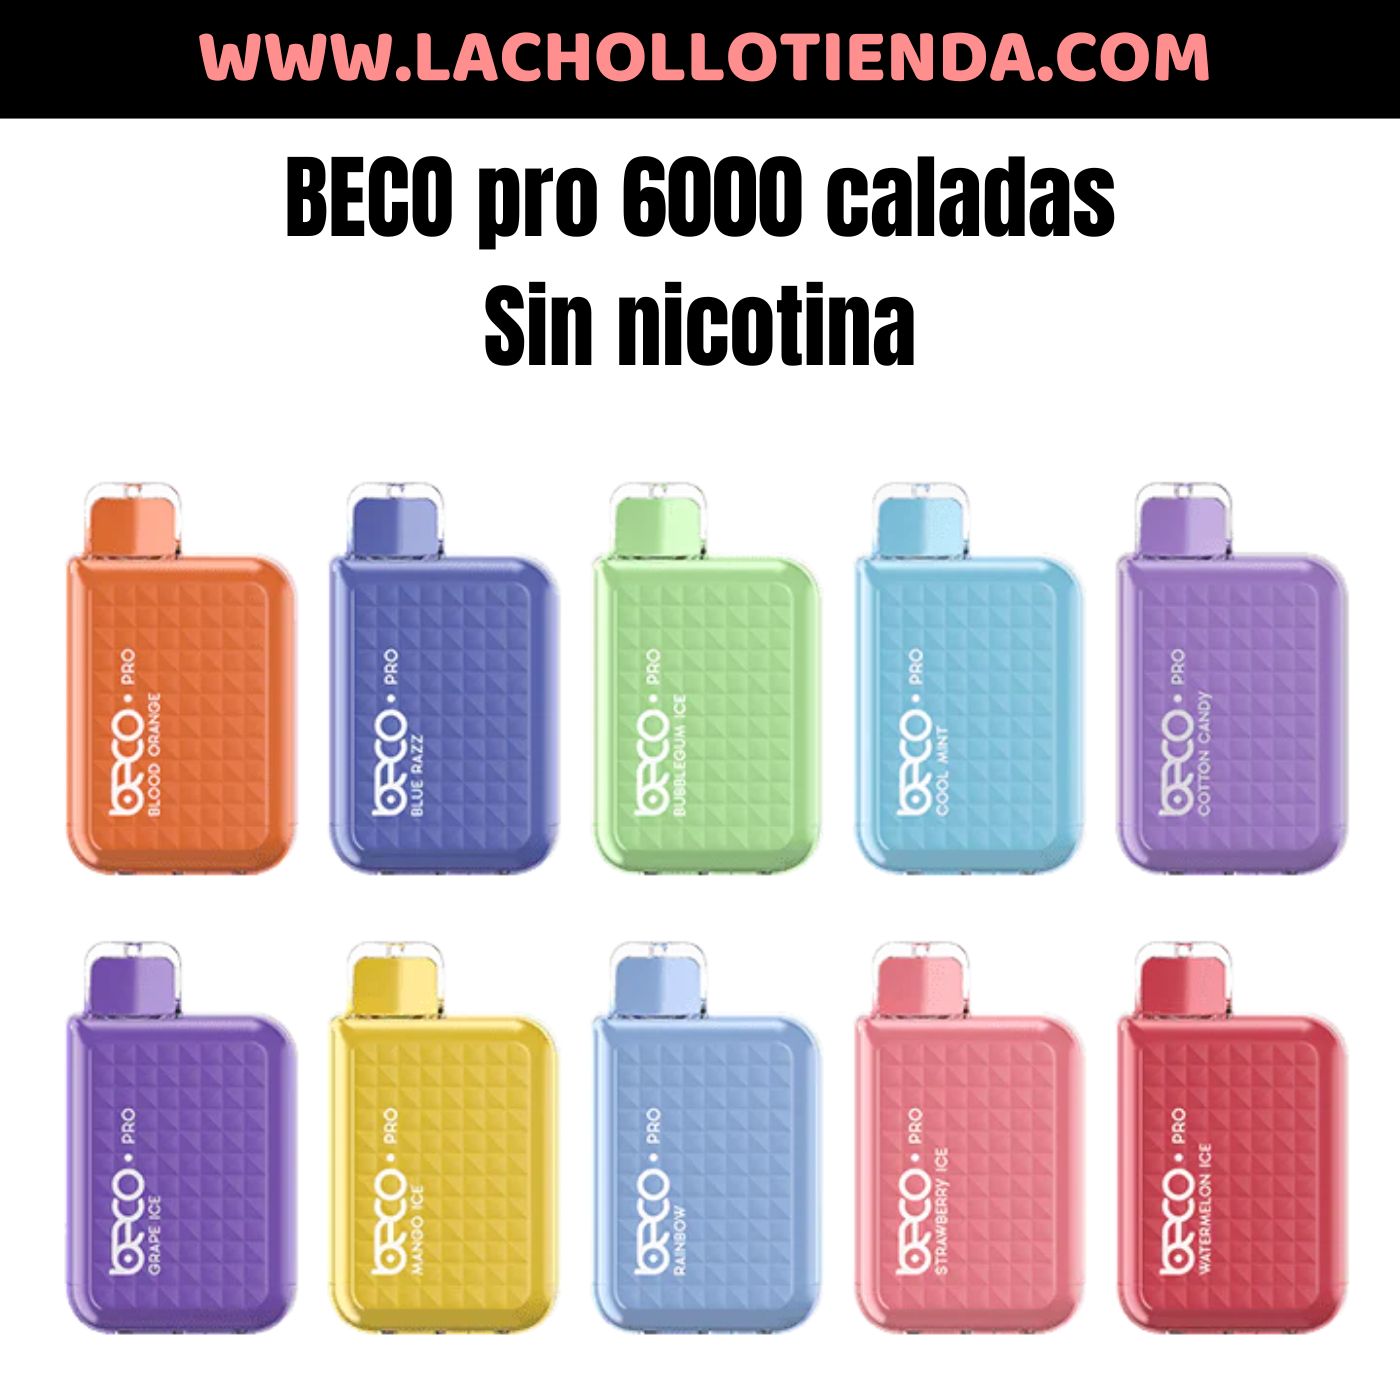 Pod Desechable Beco Pro 6000 Caladas Sin Nicotina By: Vaptio